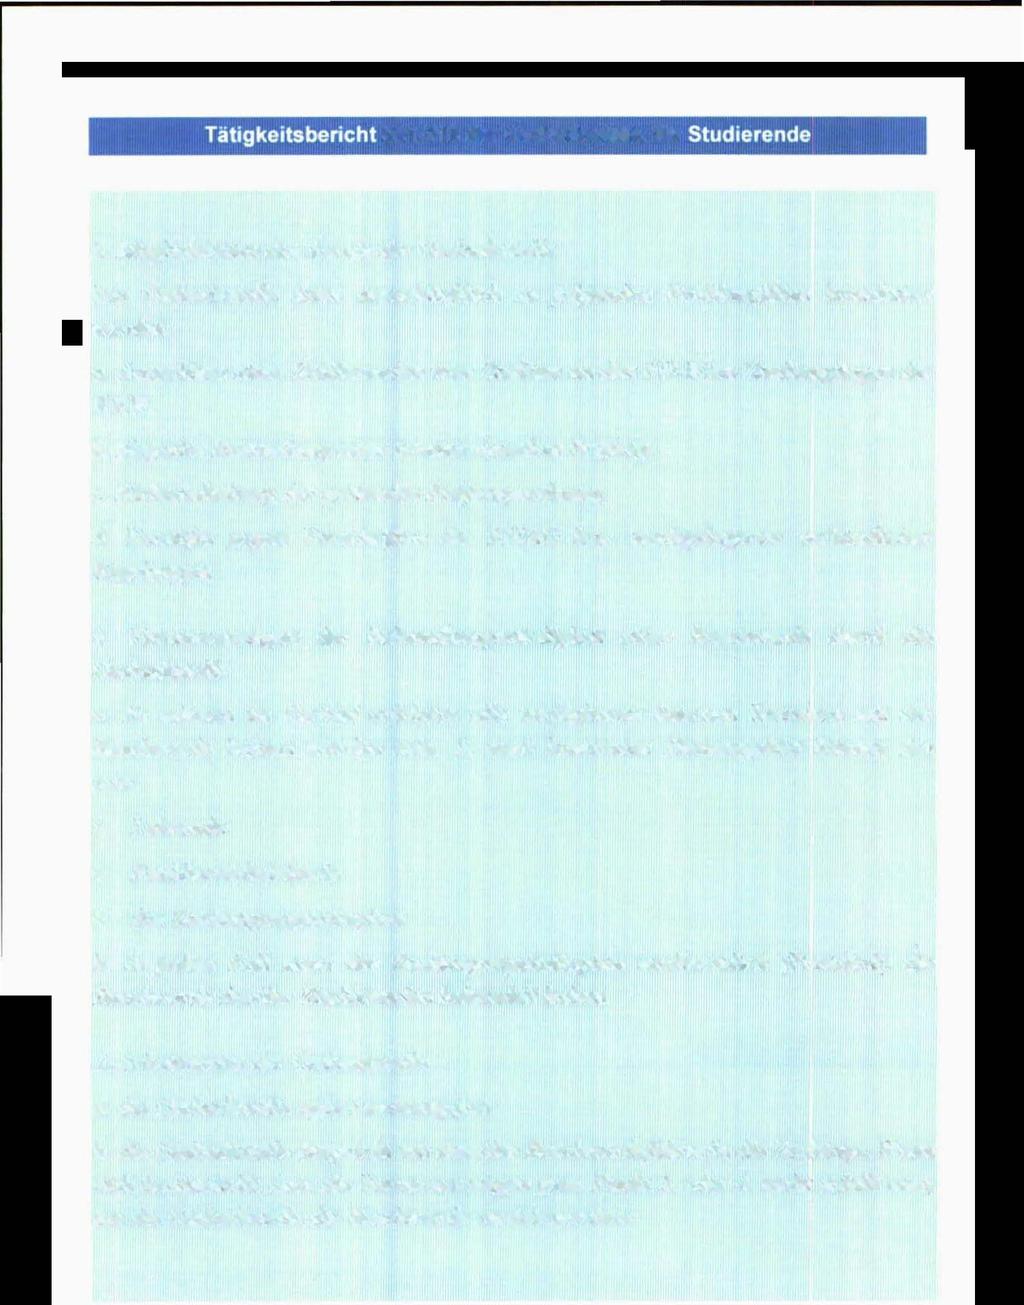 38 von 100 III-35 der Beilagen XXV. GP - Bericht - 02 Hauptdokument Teil 1 (gescanntes Original) Tätigkeitsbe ri cht 2012/13 der Ombudsstelle für Studierende 3.